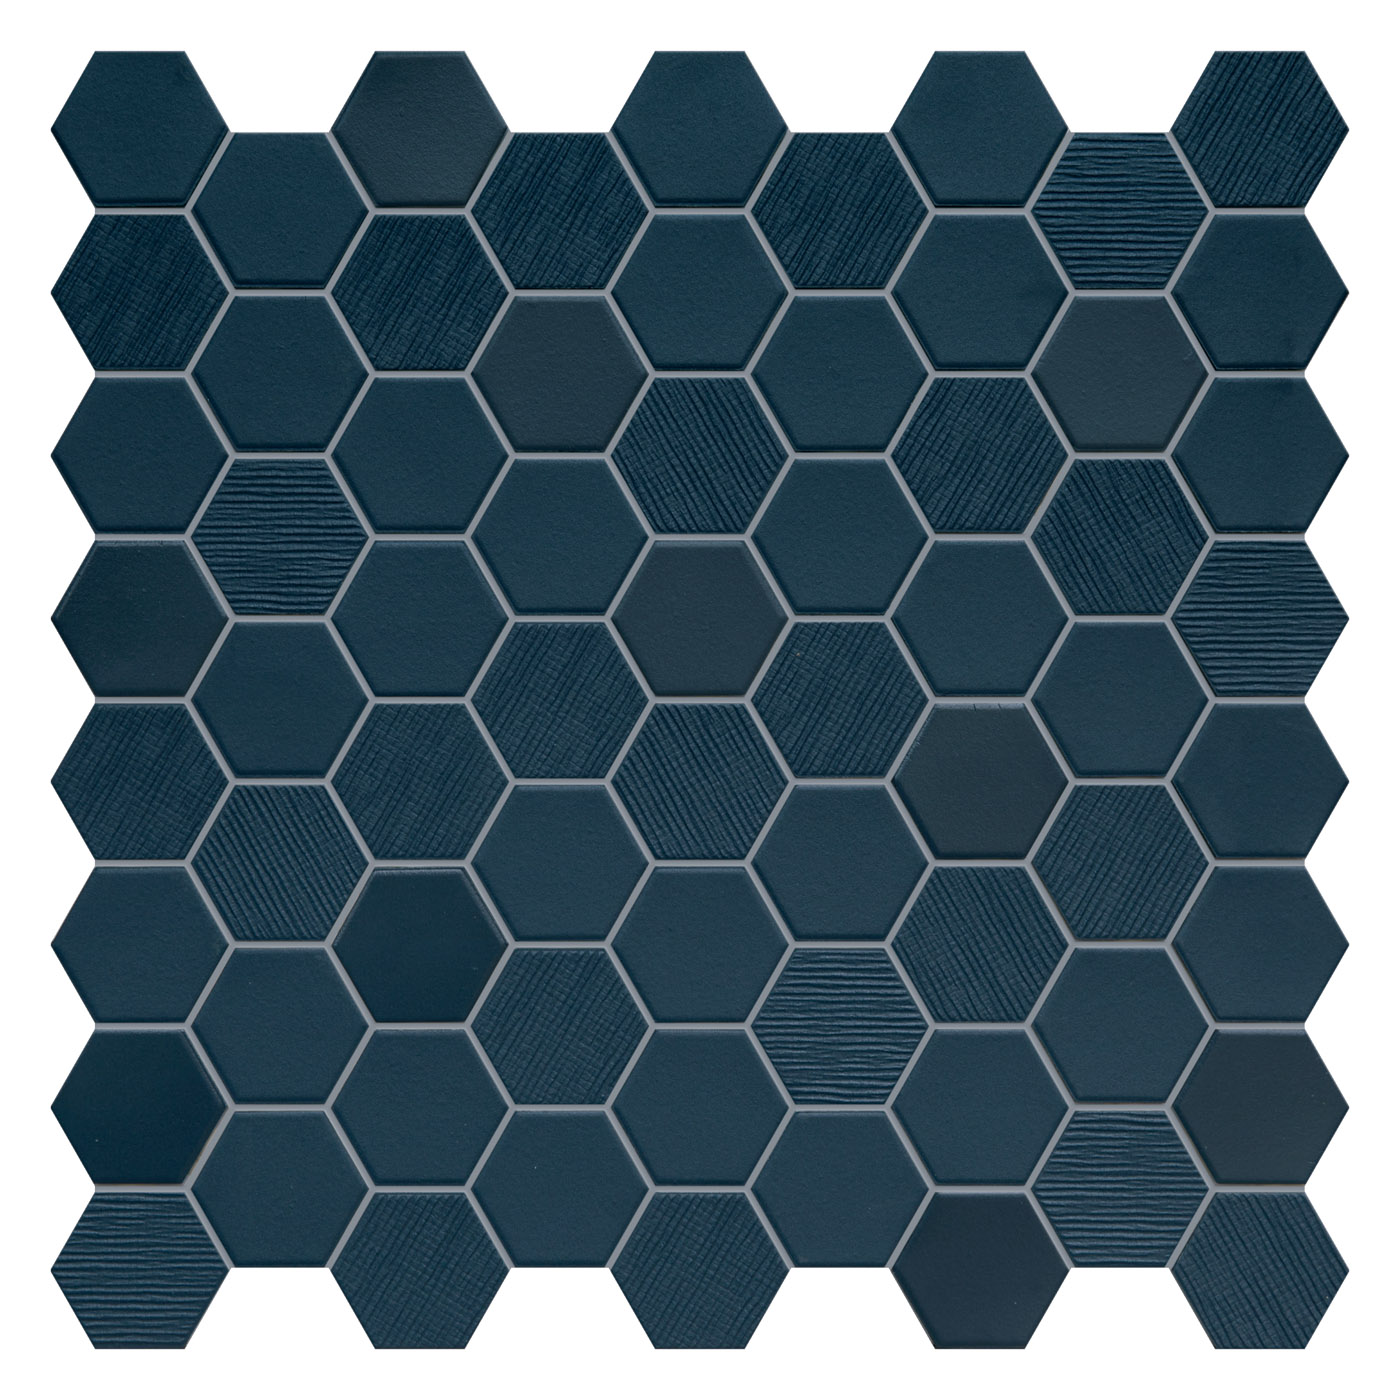 Bodenfliese,Wandfliese Terratinta Hexa Deep Navy Matt – Glossy Deep Navy TTBST04MHMIX glaenzend matt 31,6x31,6cm Mosaik 4,3x3,8 Mix 4mm